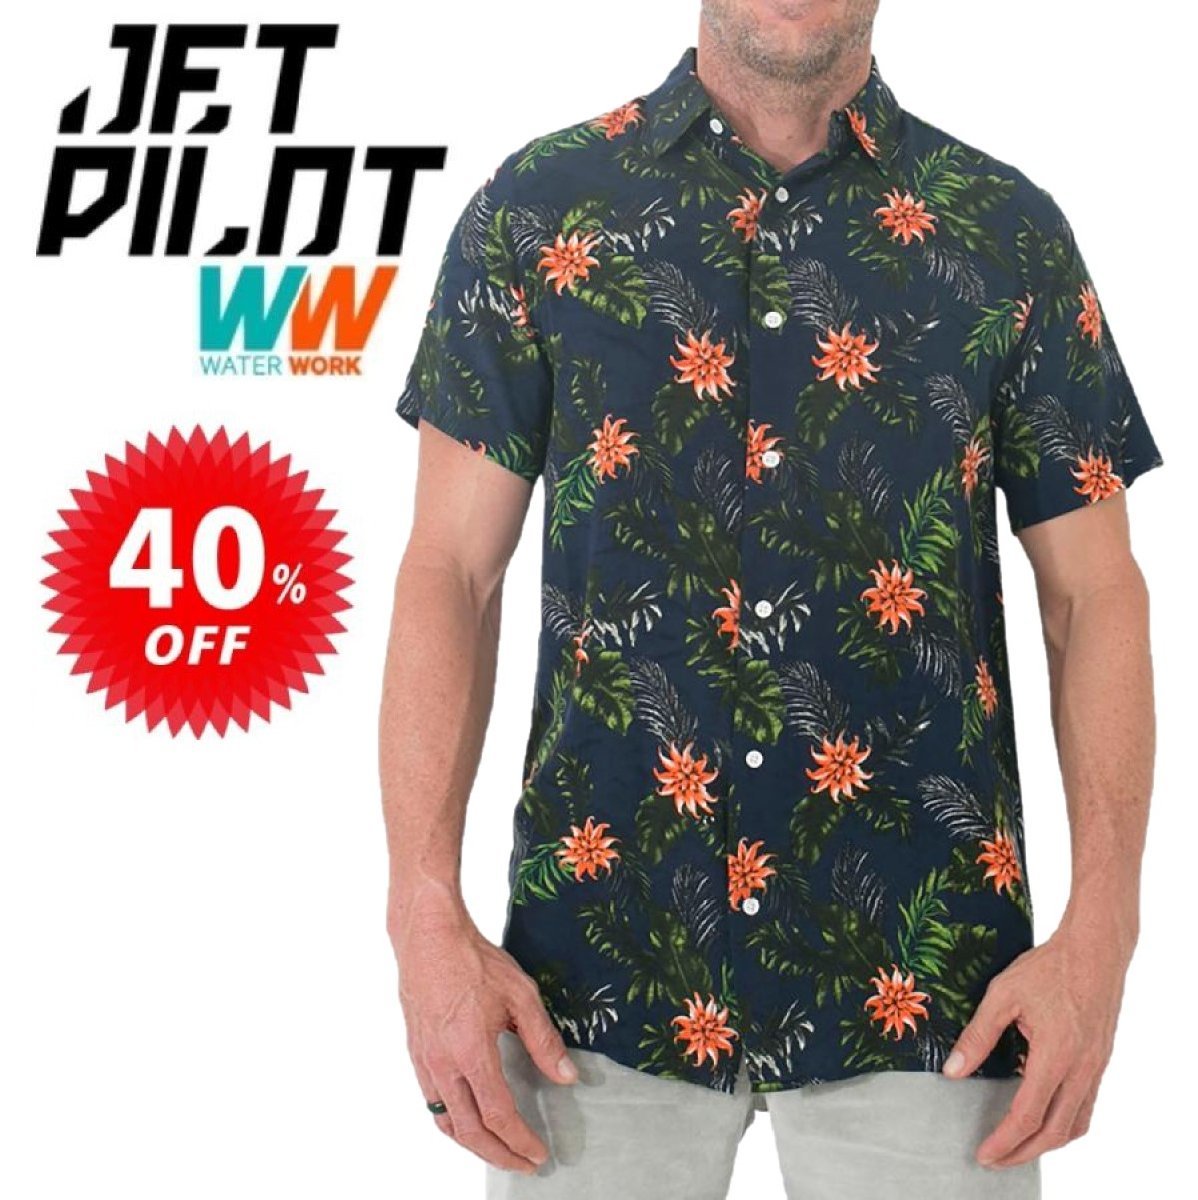 ジェットパイロット JETPILOT 半袖シャツ メンズ セール 40%オフ 送料無料 パーティーシャツ S19690 ネイビー S 花柄_画像1